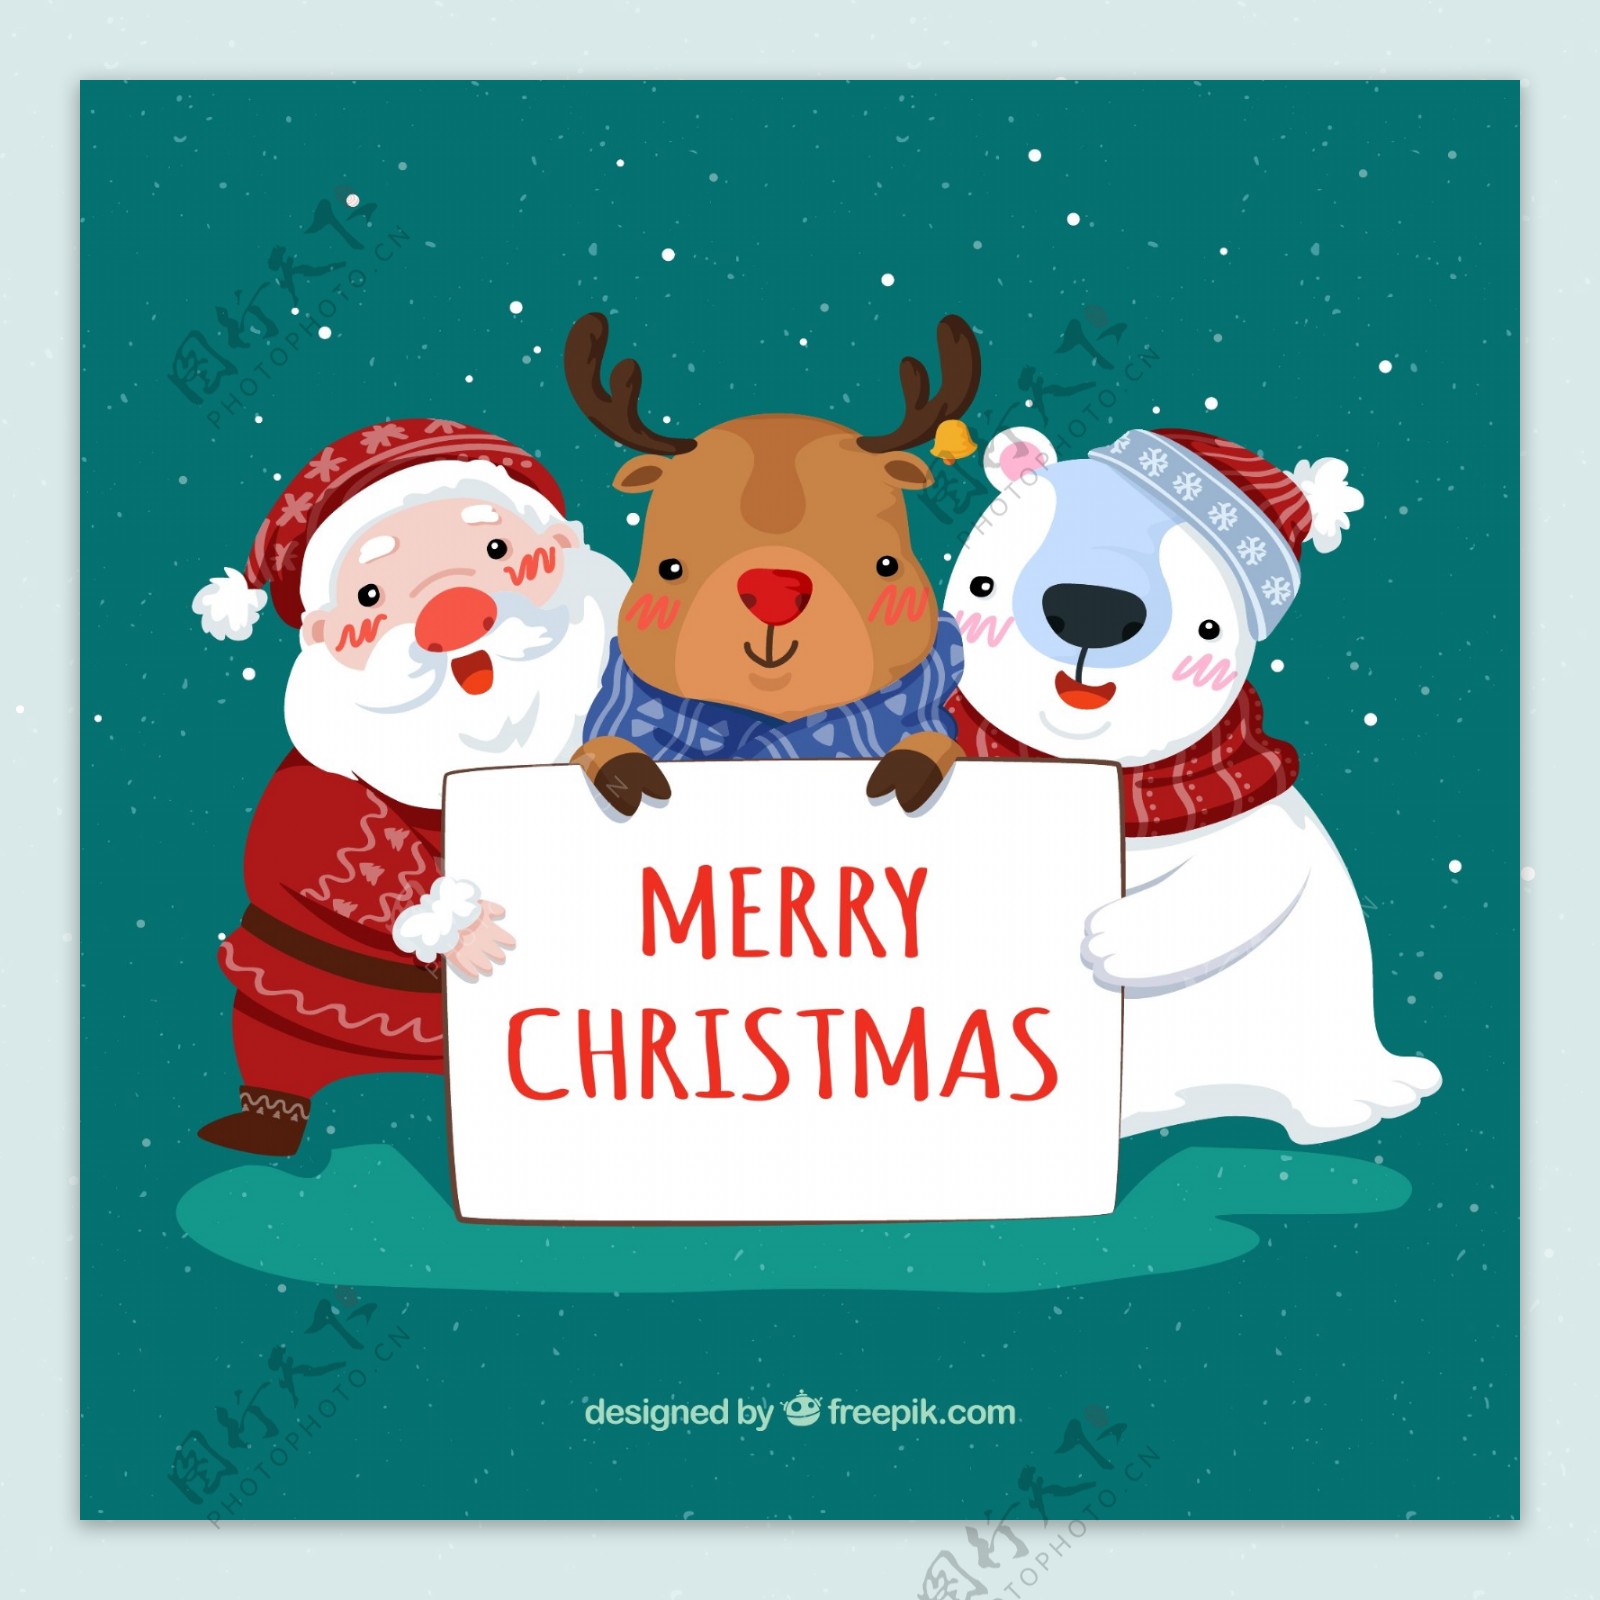 可爱圣诞老人驯鹿和北极熊矢量图